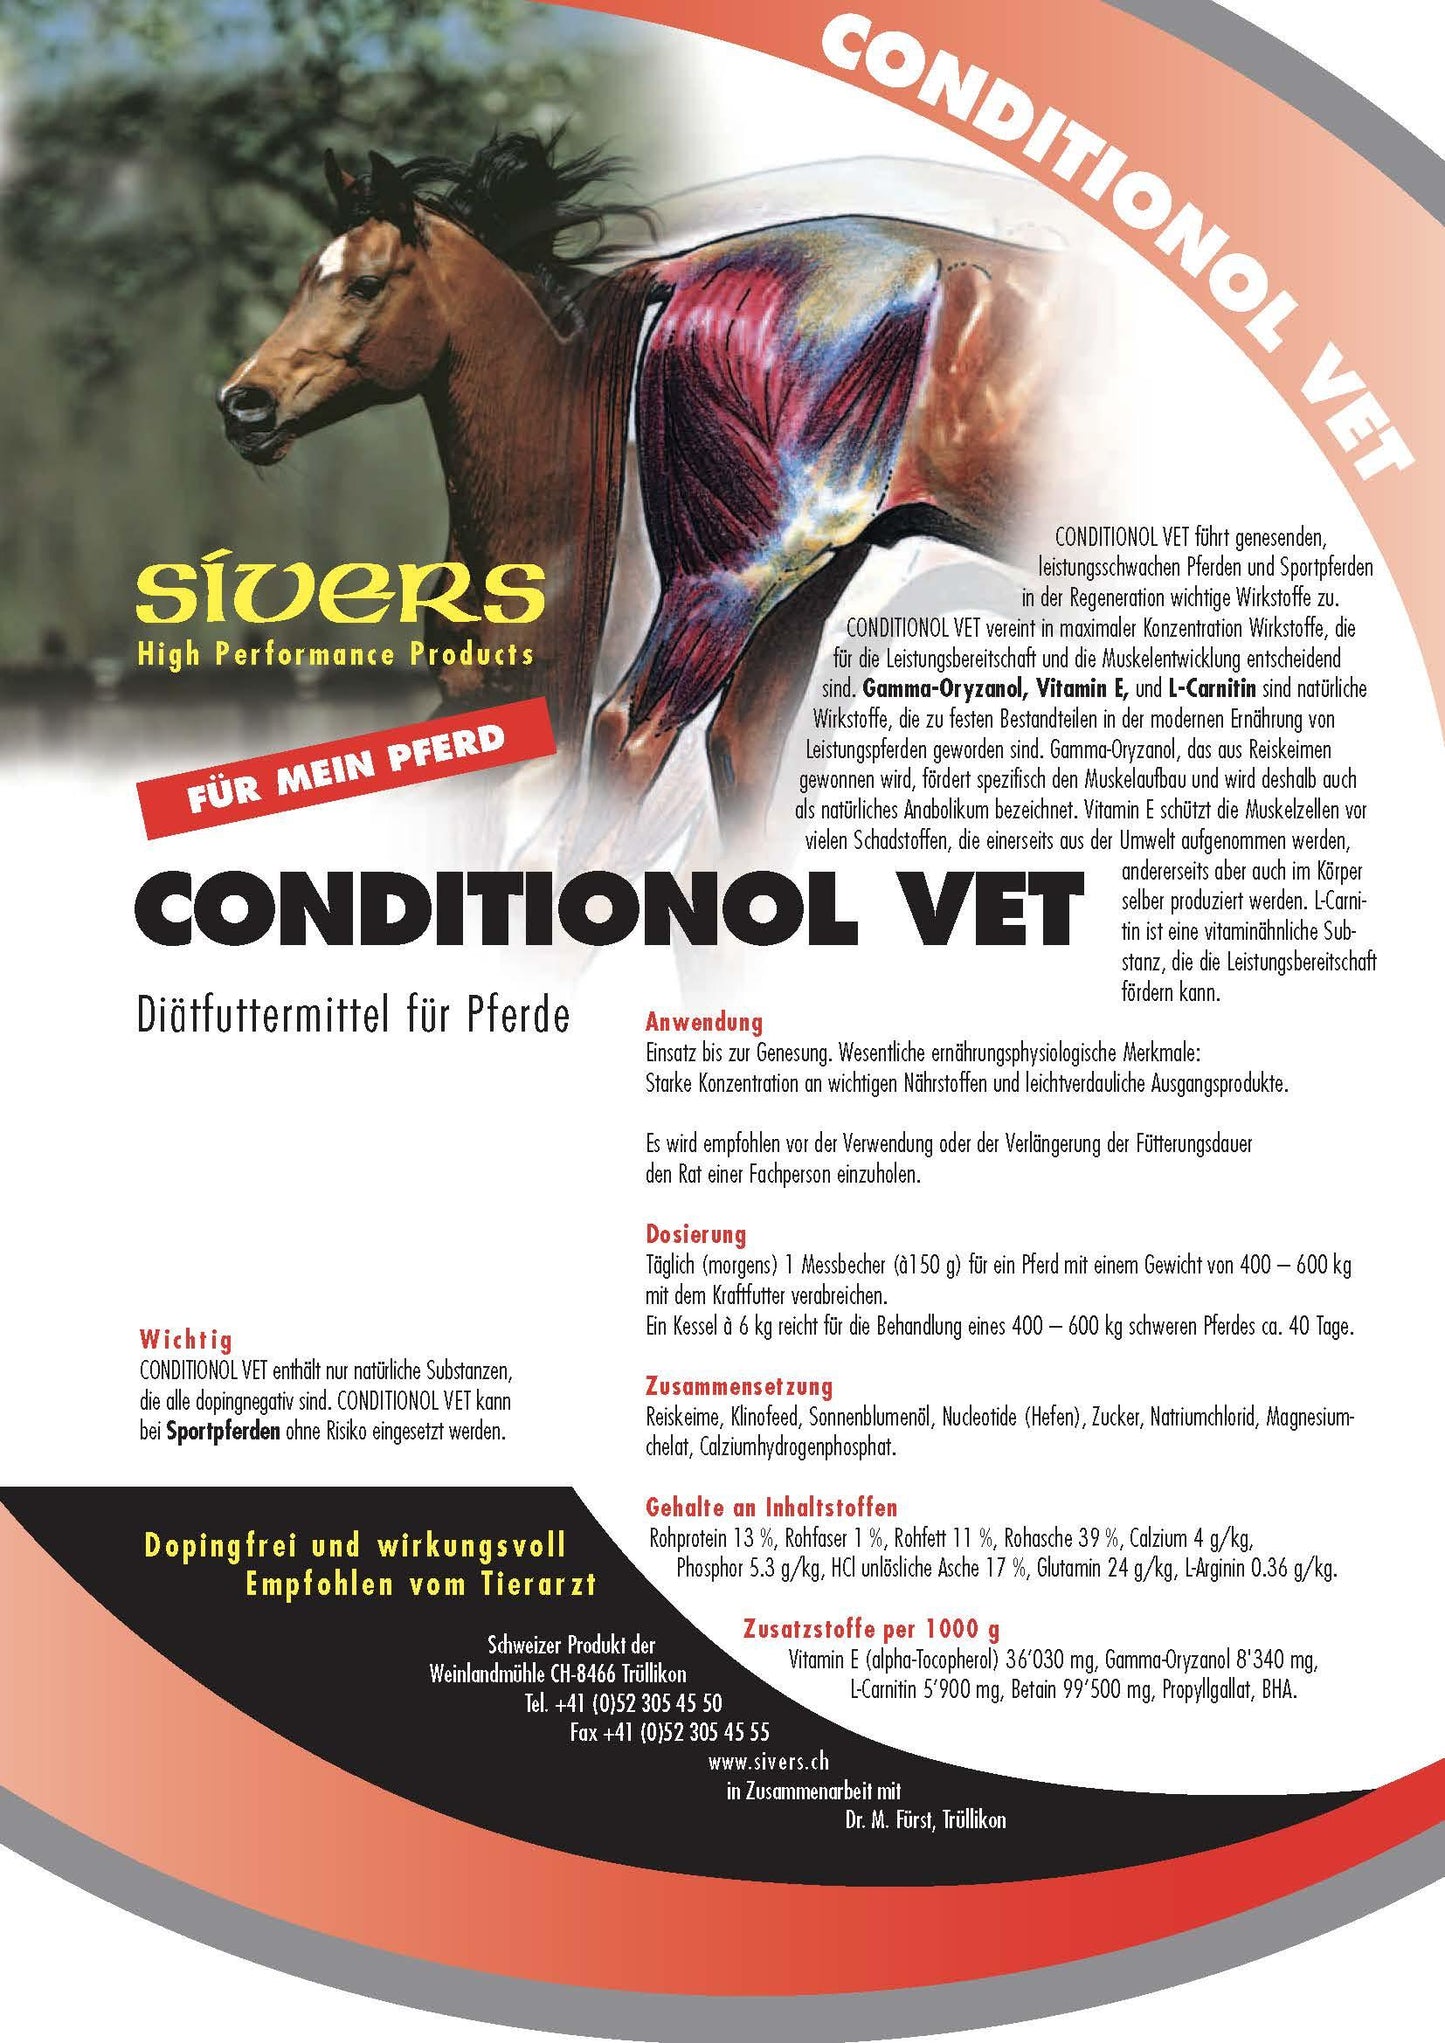 Conditionol Vet - Sivers - Darreichungsform:Pulver, Ergänzungsfuttermittel:Sport & Leistung, Hersteller:Sivers, Tierart:Pferd - Marigin AG Onlineshop für Tierbedarf